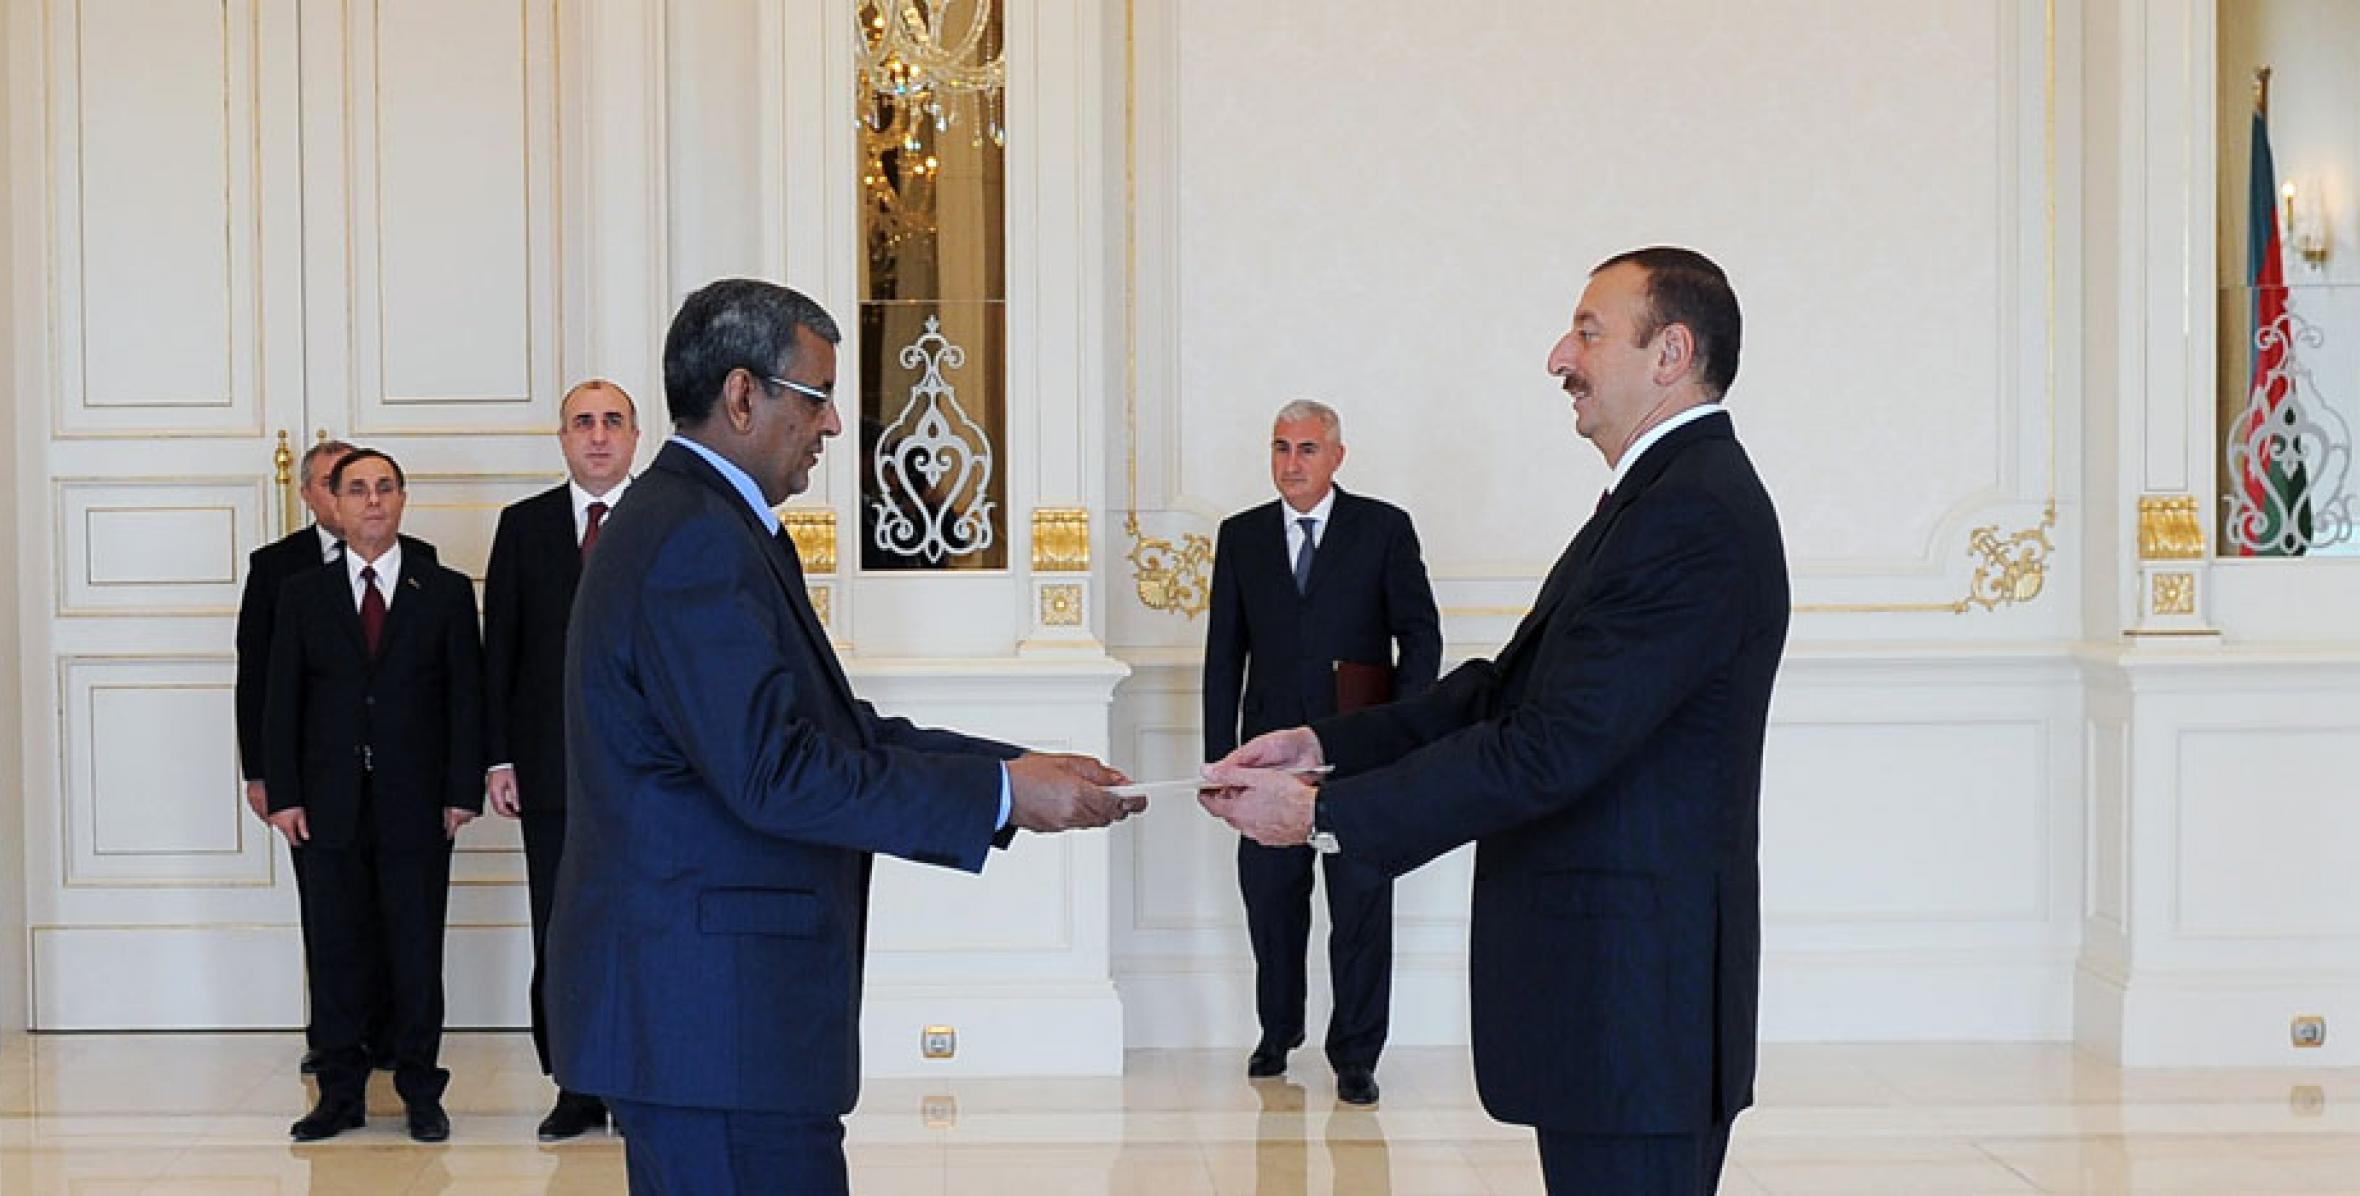 Ильхам Алиев принял верительные грамоты новоназначенного посла Мавритании